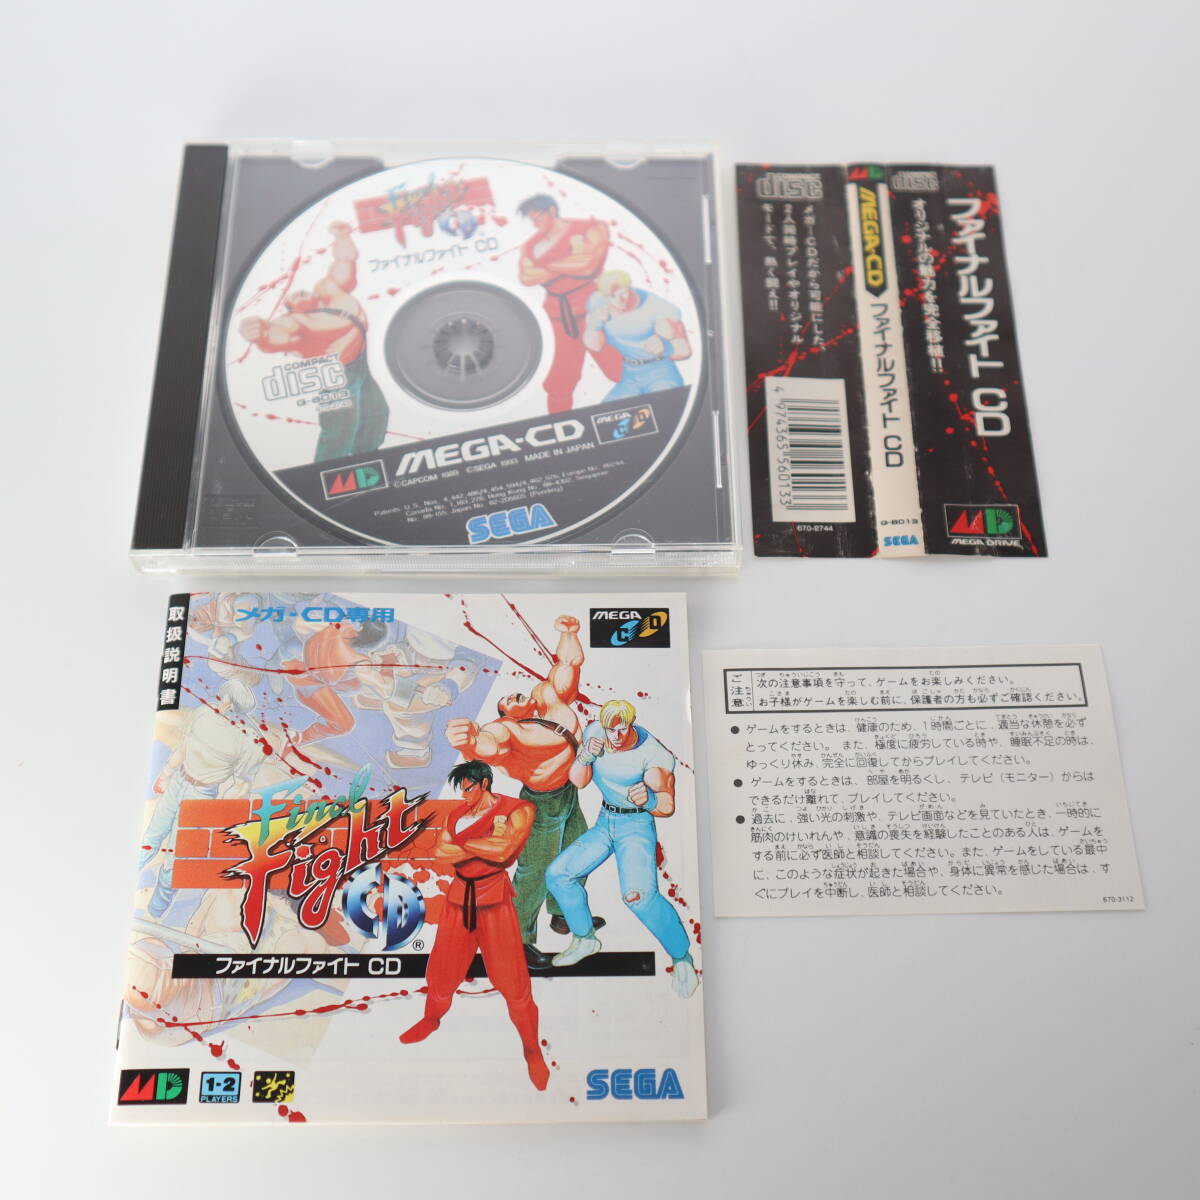  Sega Mega Drive final faitoCD obi * manual attaching MEGA CD G-6013 operation not yet verification 